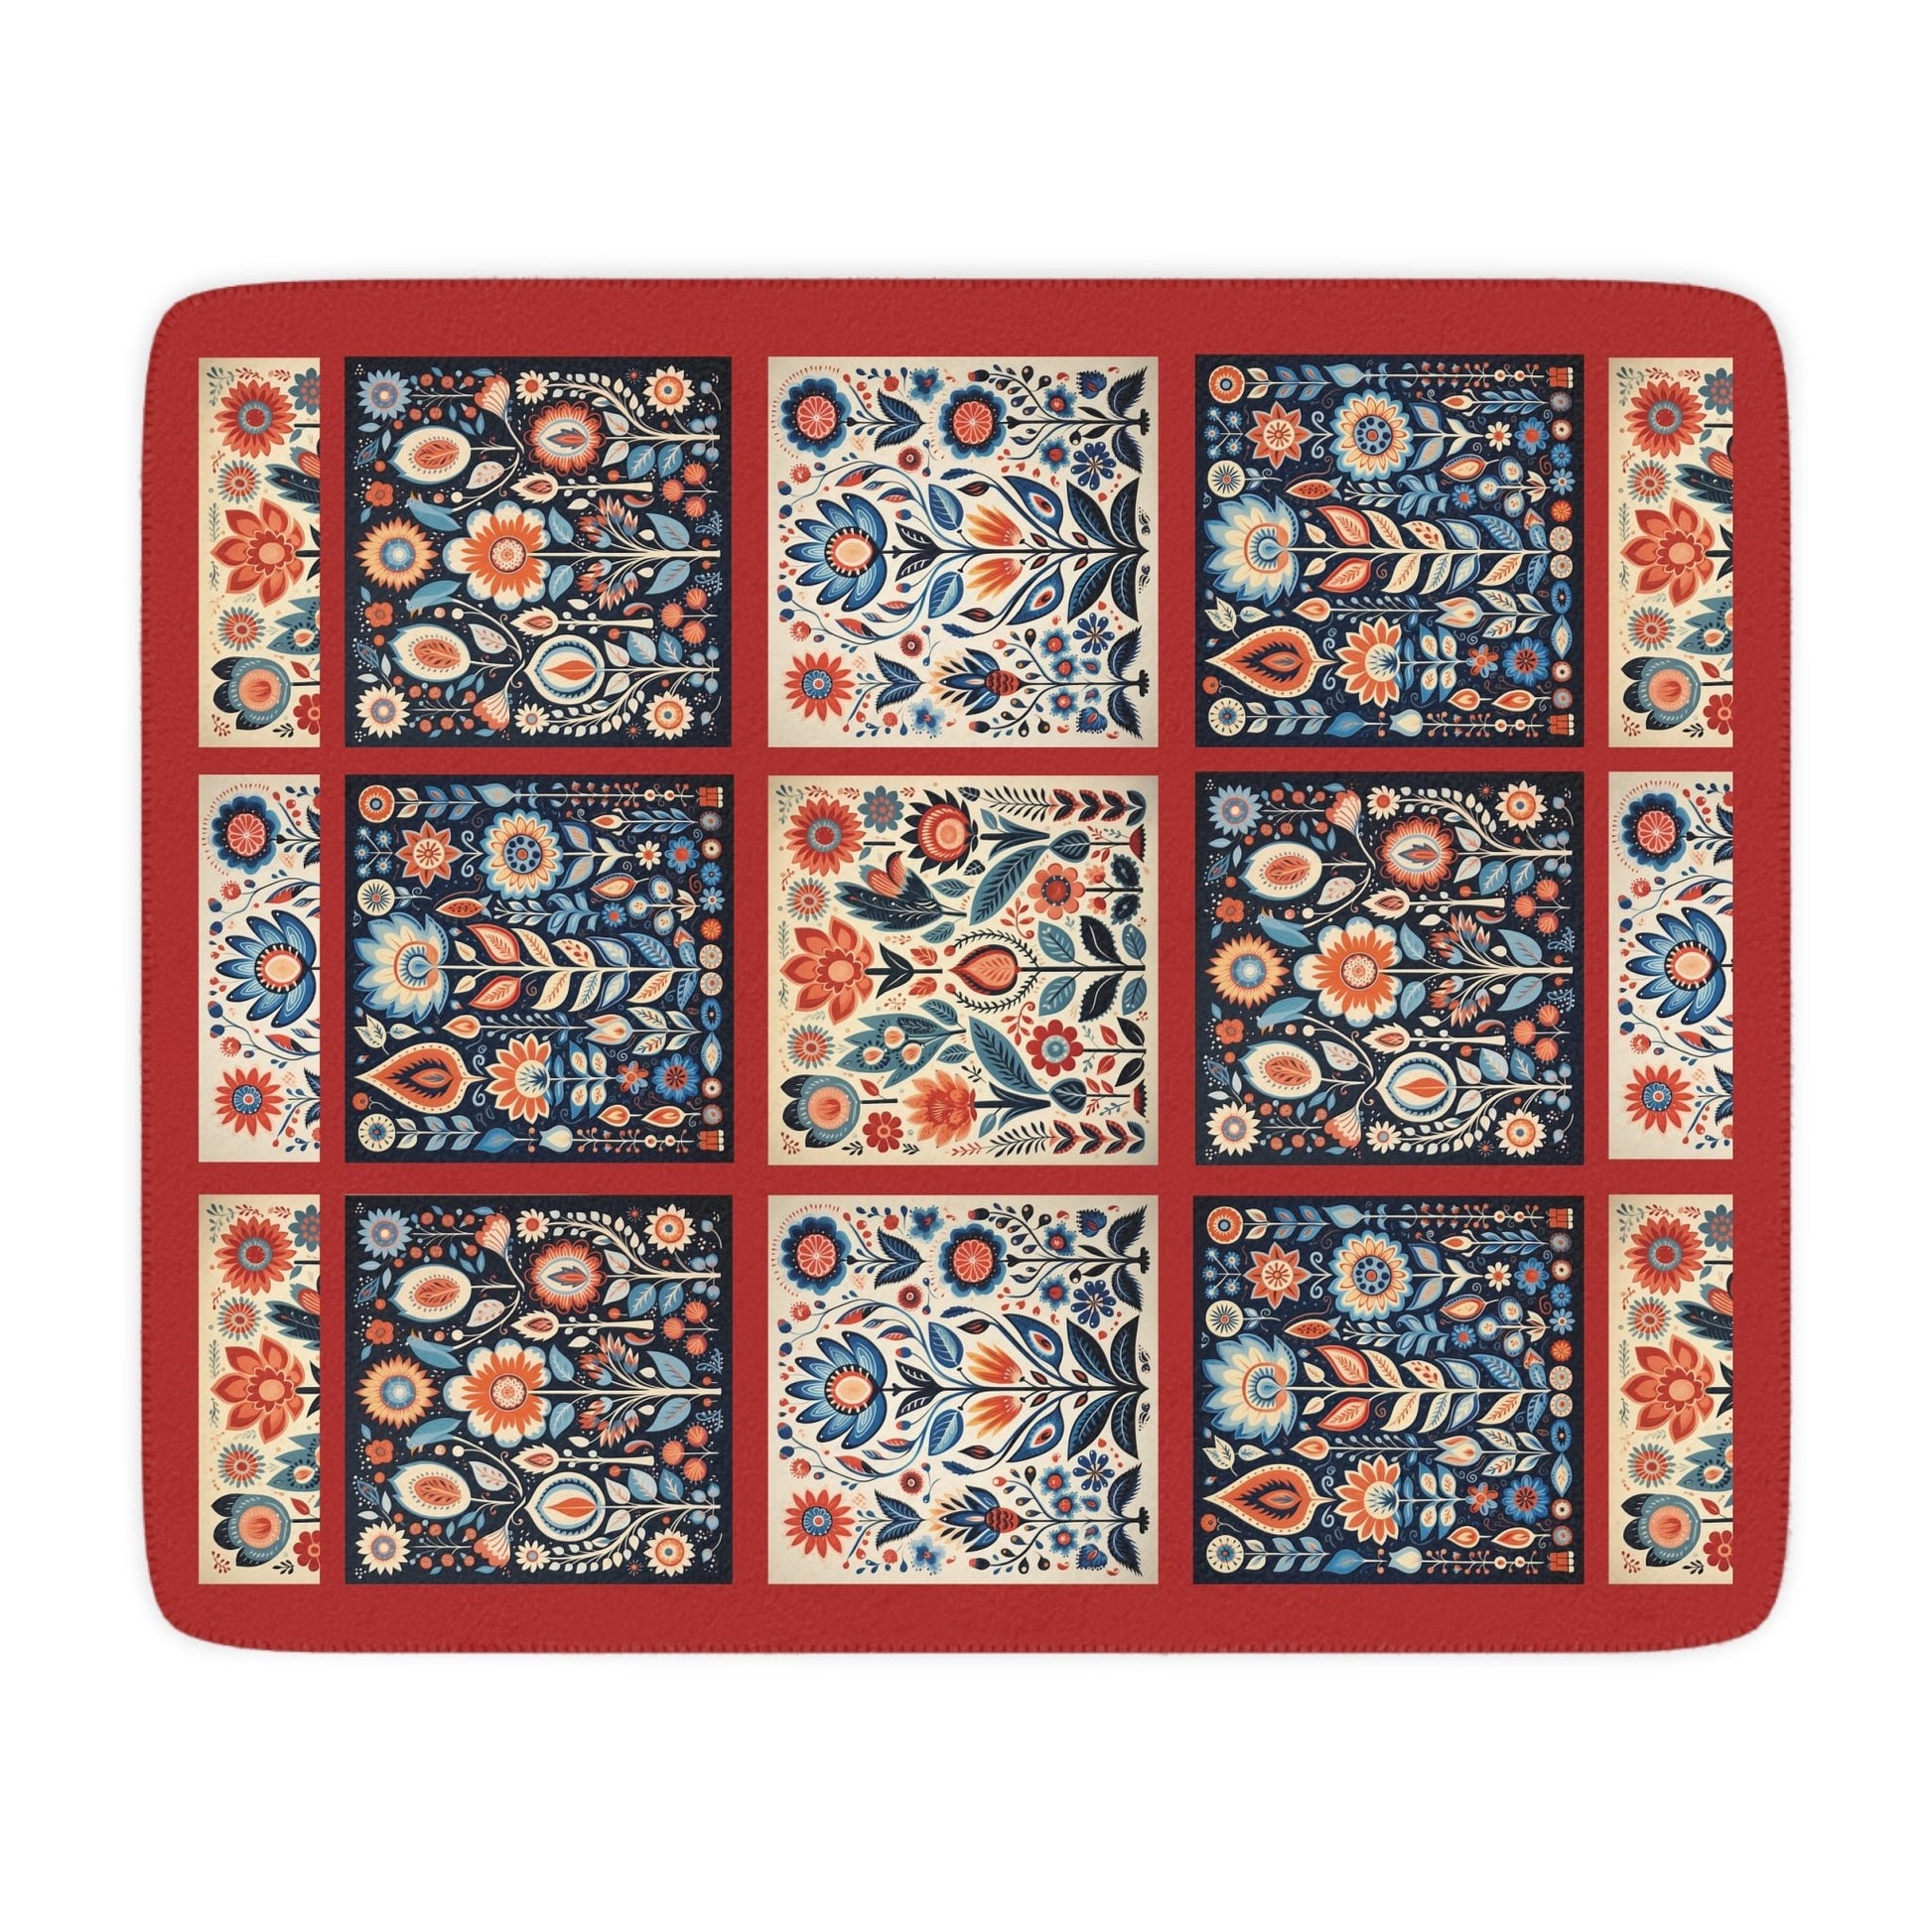 Scandi Folk Art Blanket, Scandinavian Art Style - Folk Art - Romantic Gift - FlooredByArt